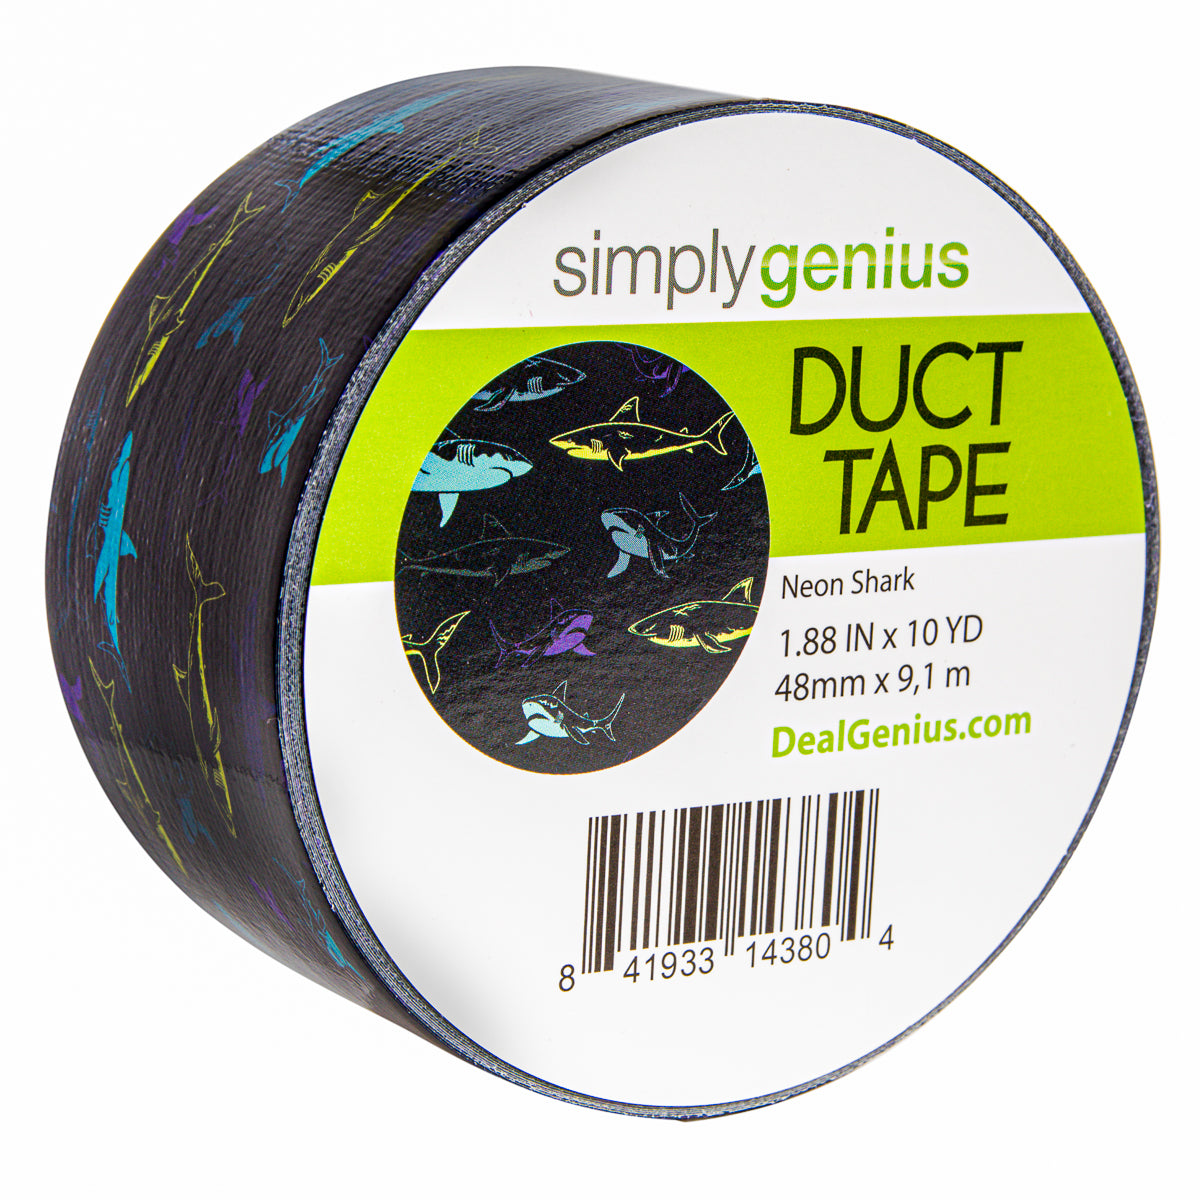 SCOTCH Duct Tape fibre gris - 48 mm x 27,4 m